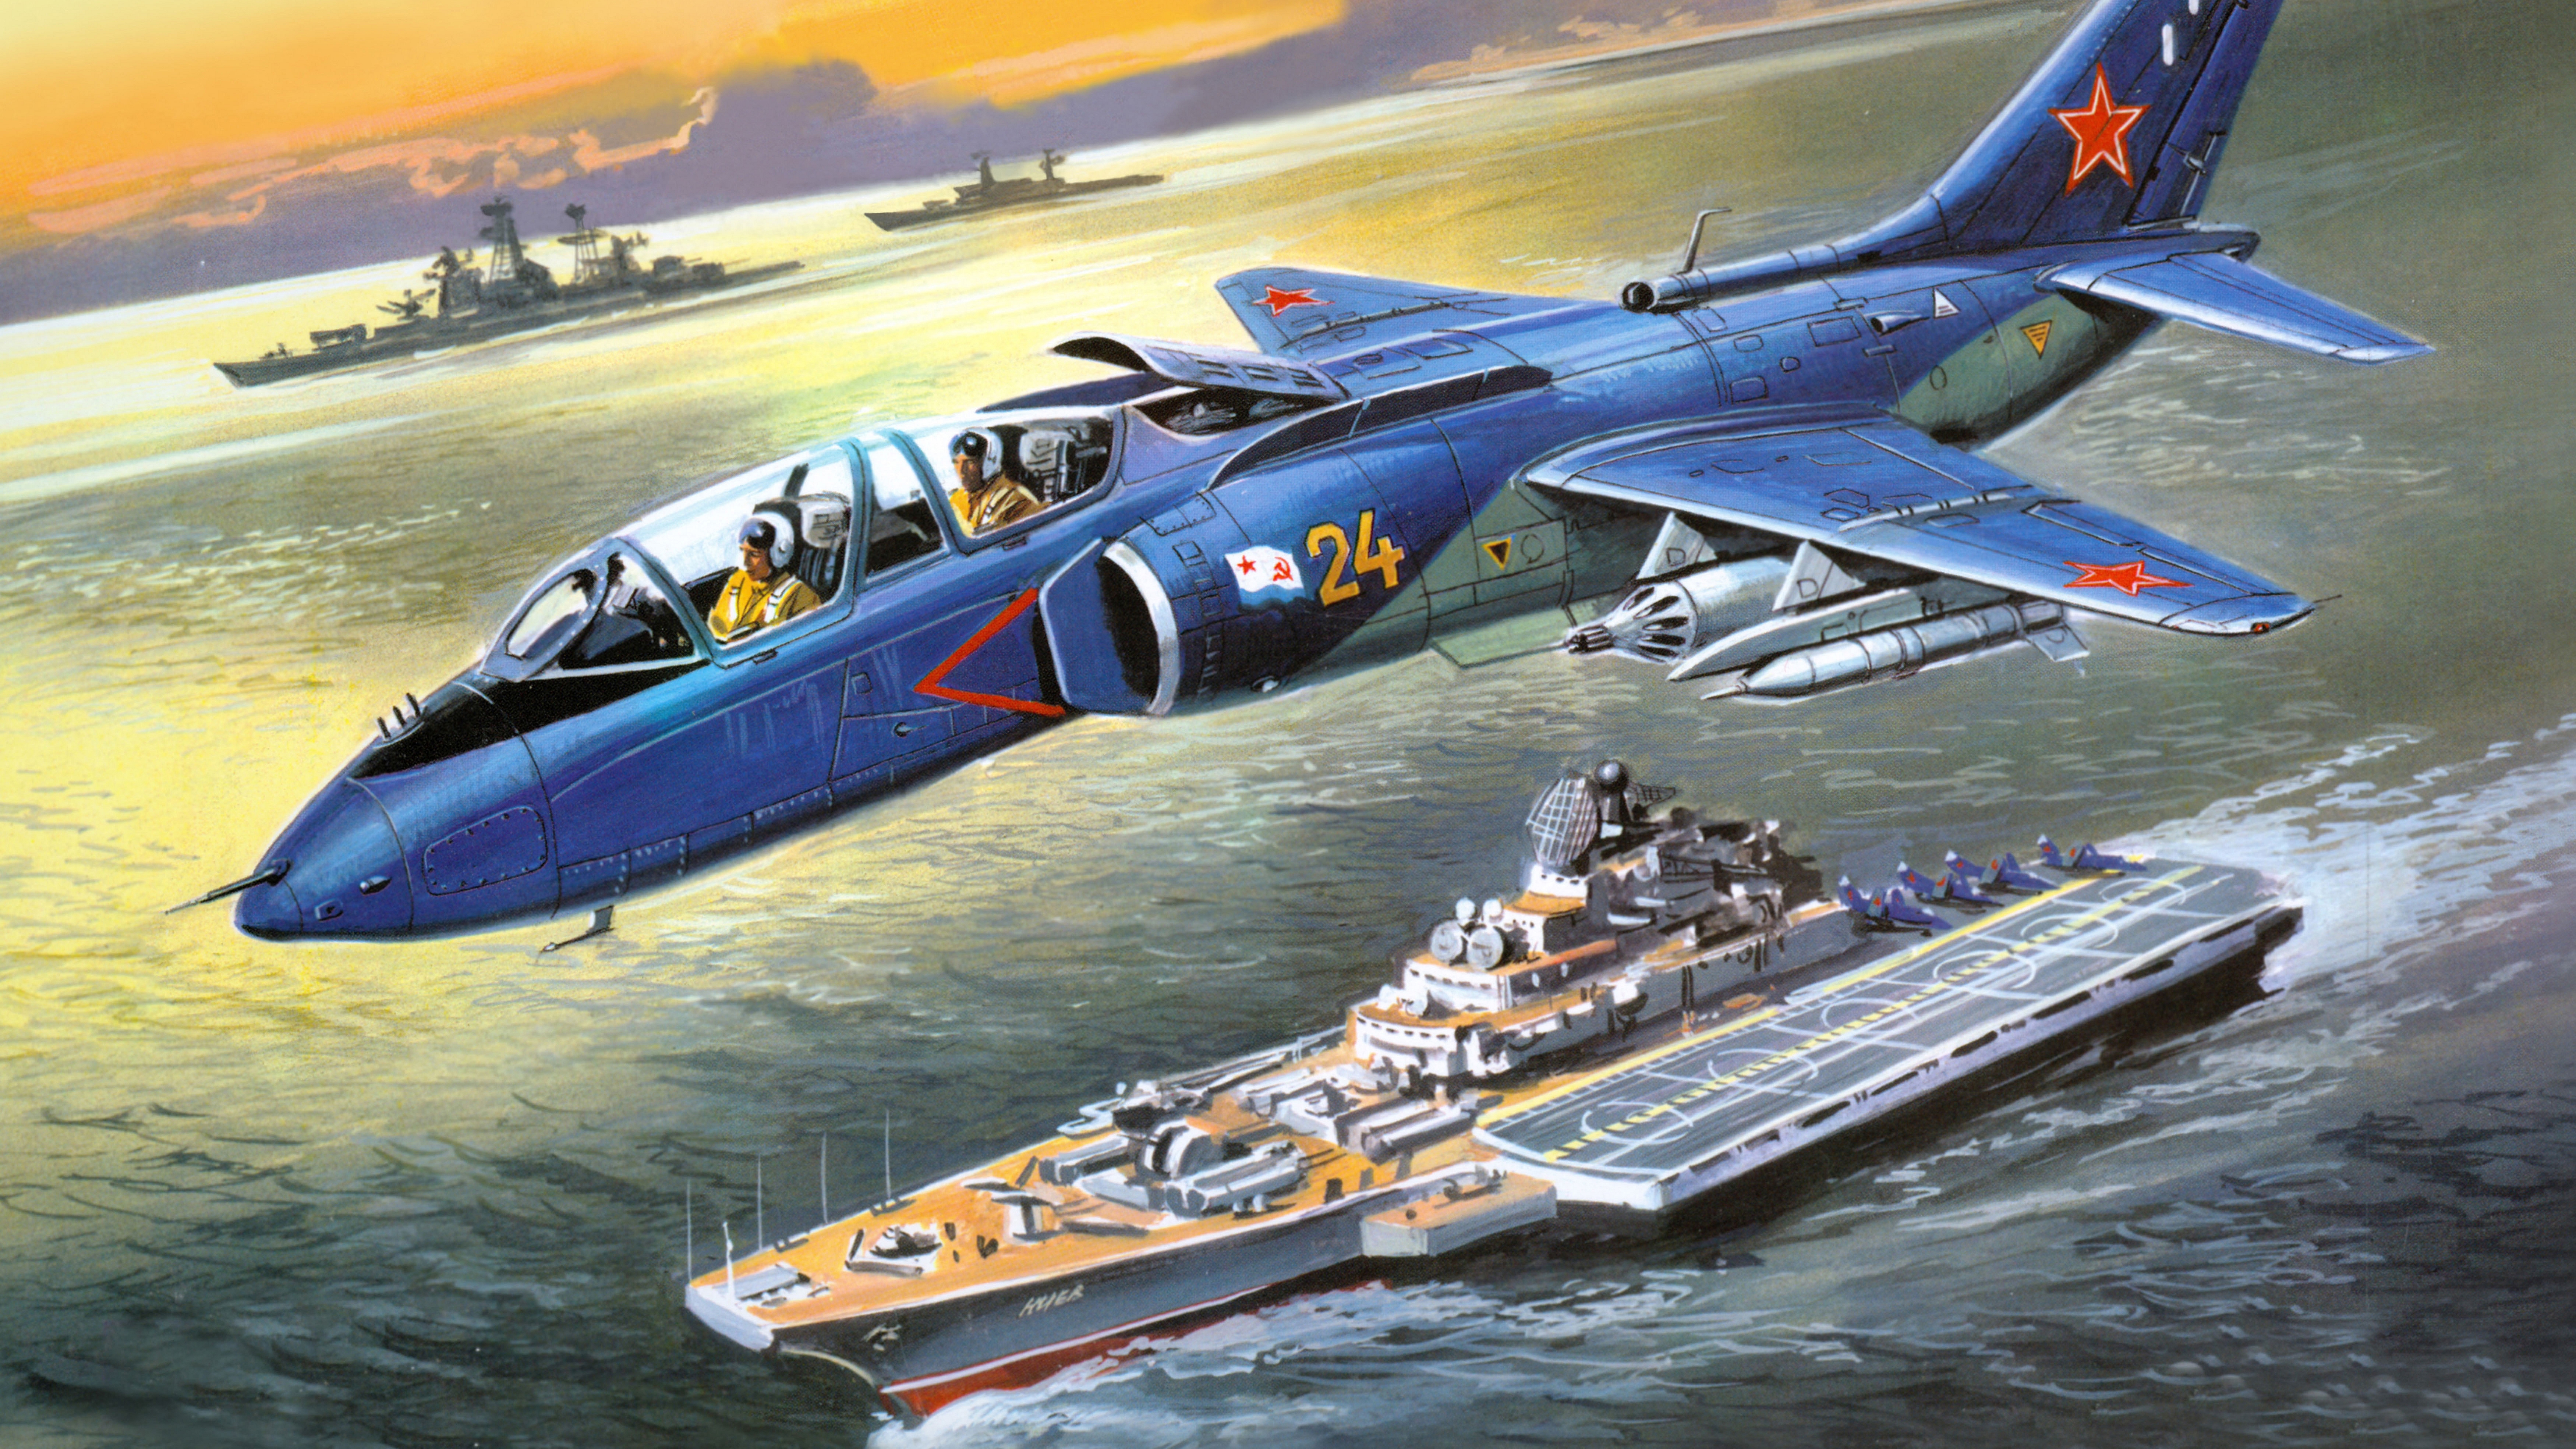 Military Yakovlev Yak-38 HD Wallpaper | Background Image